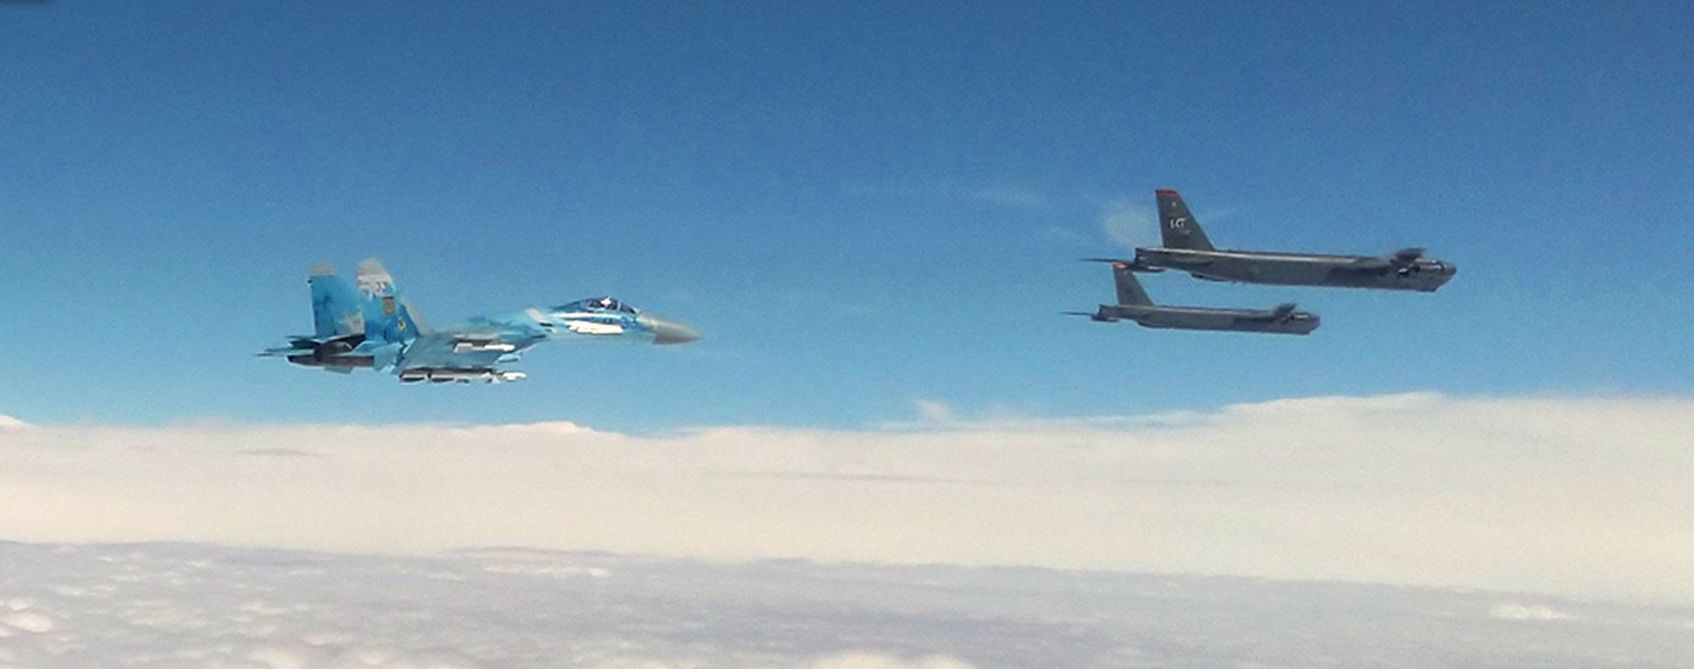 Стратегические бомбардировщики США вошли в воздушное пространство Украины